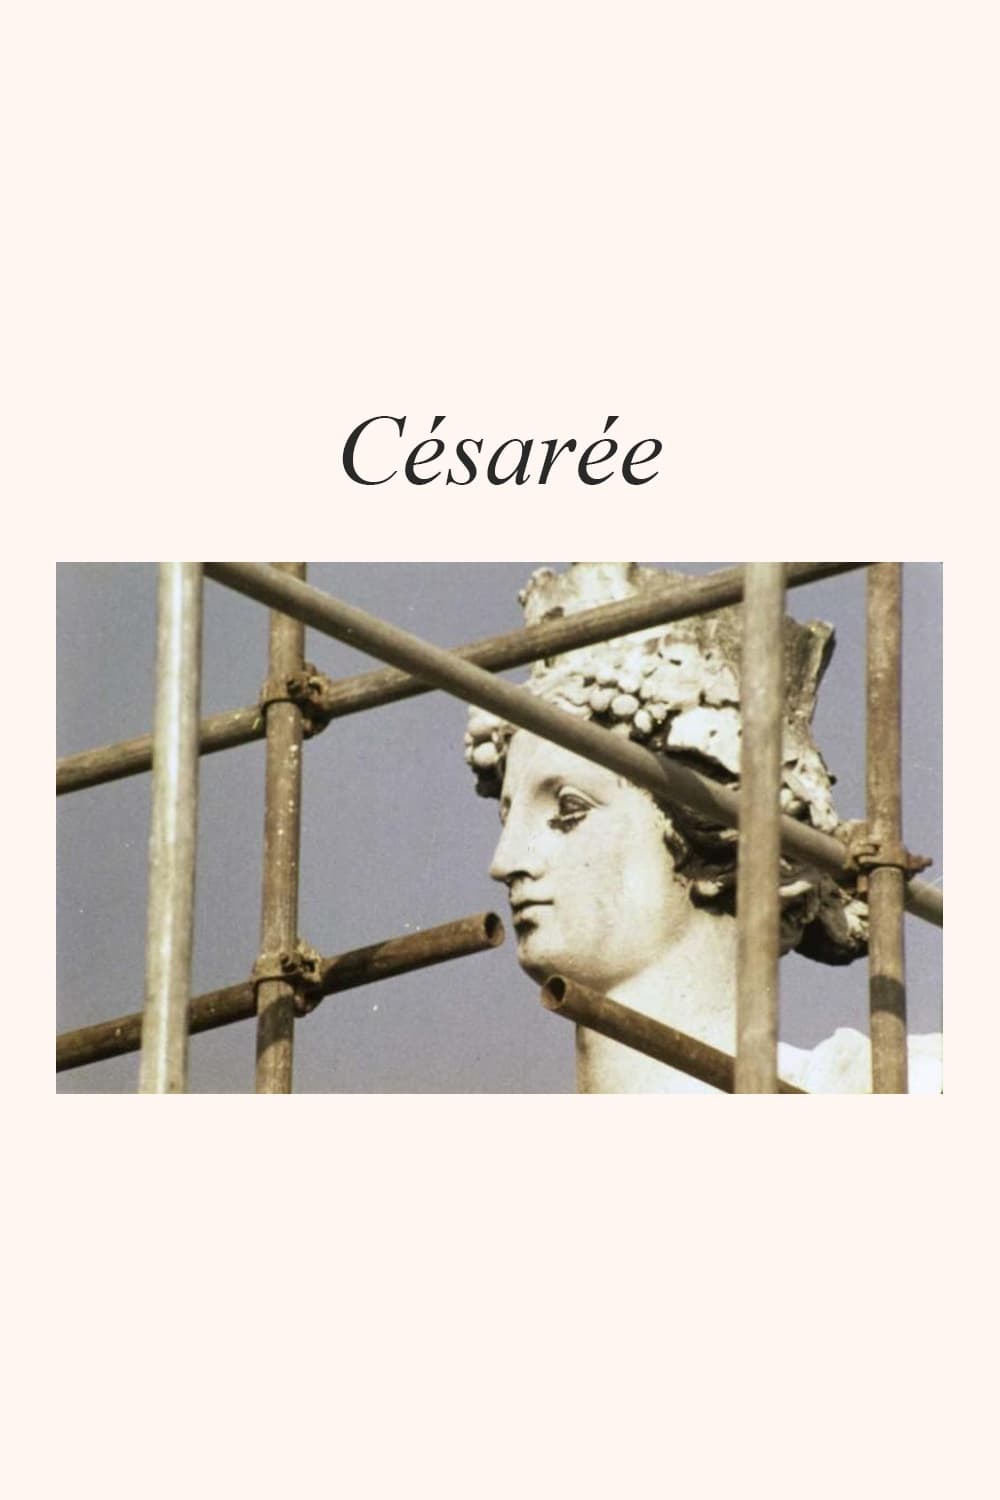 Césarée (1978)